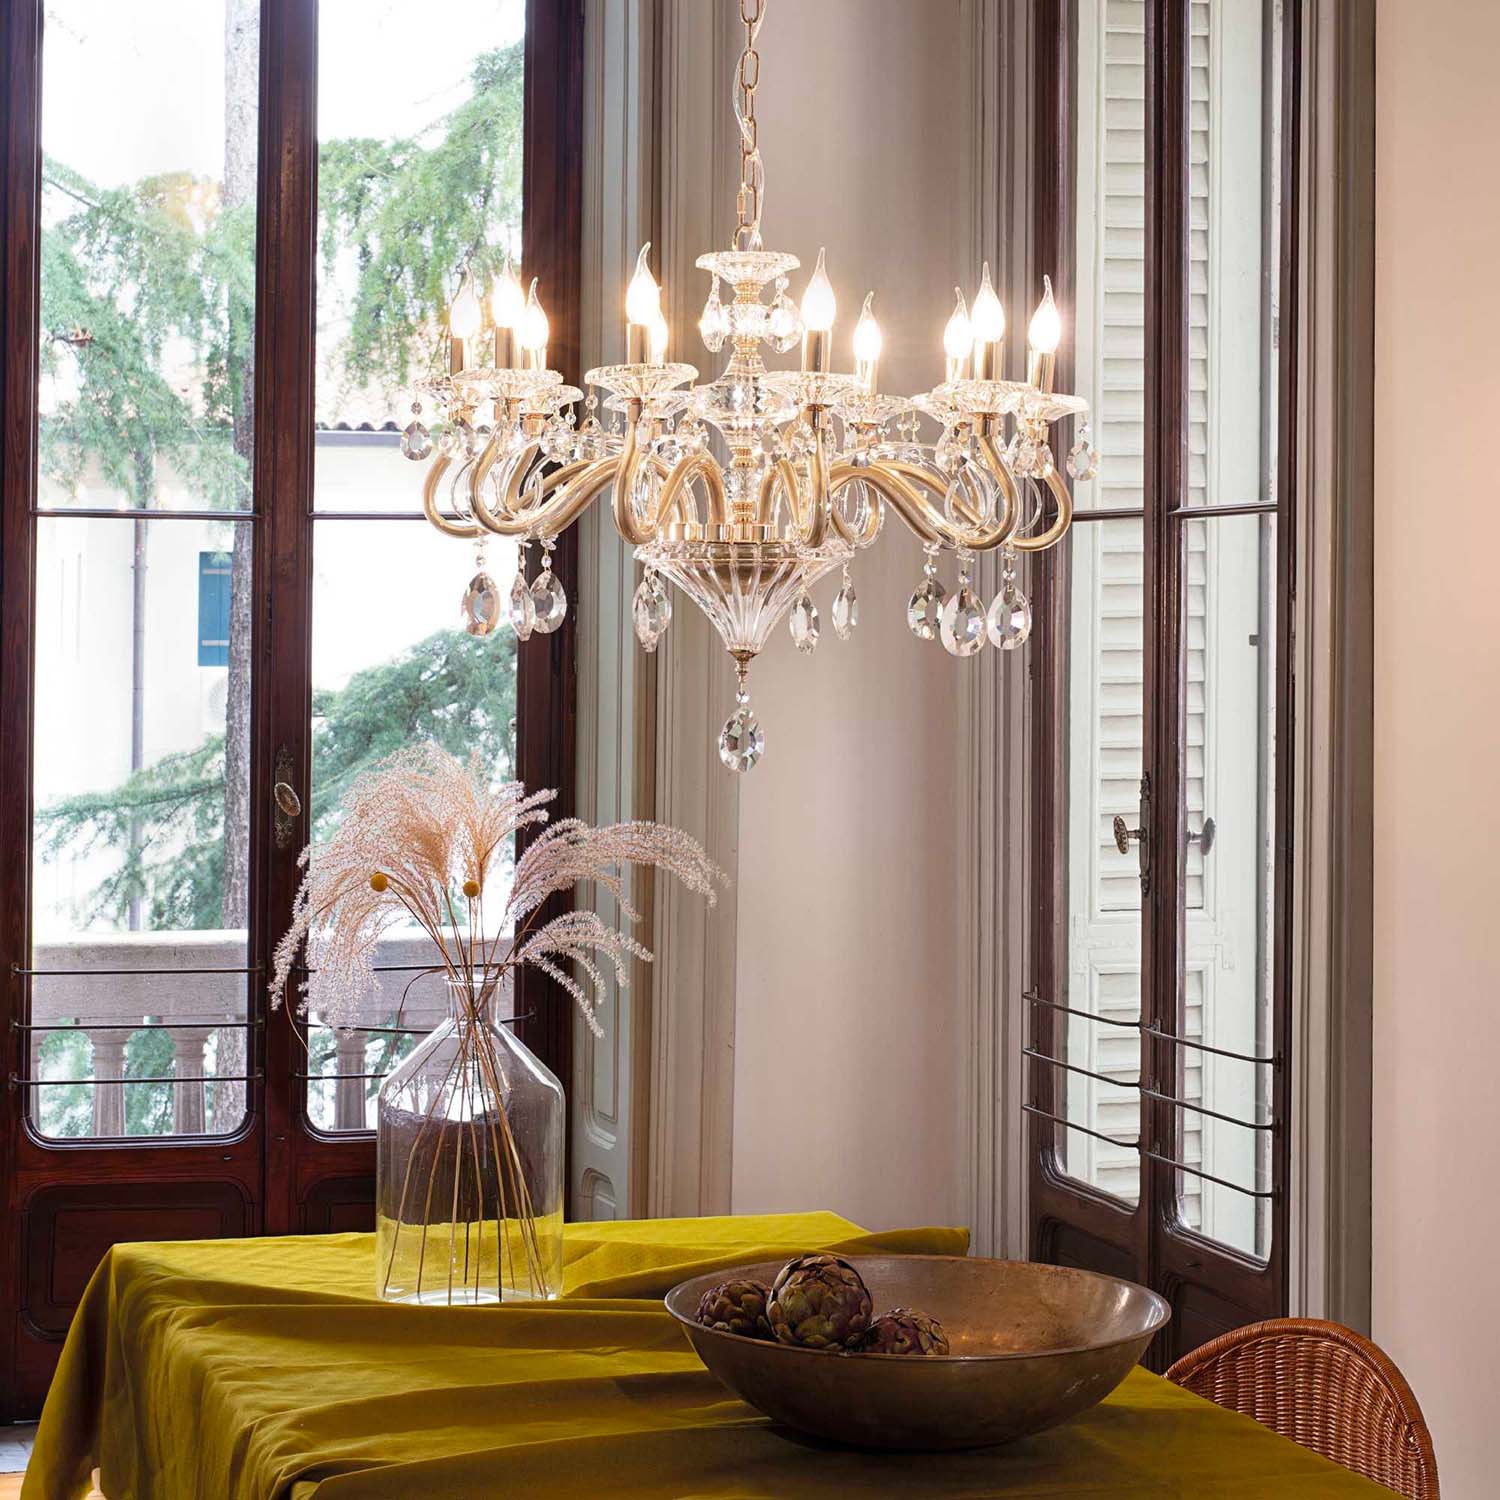 NEGRESCO - Golden glass and crystal chandelier